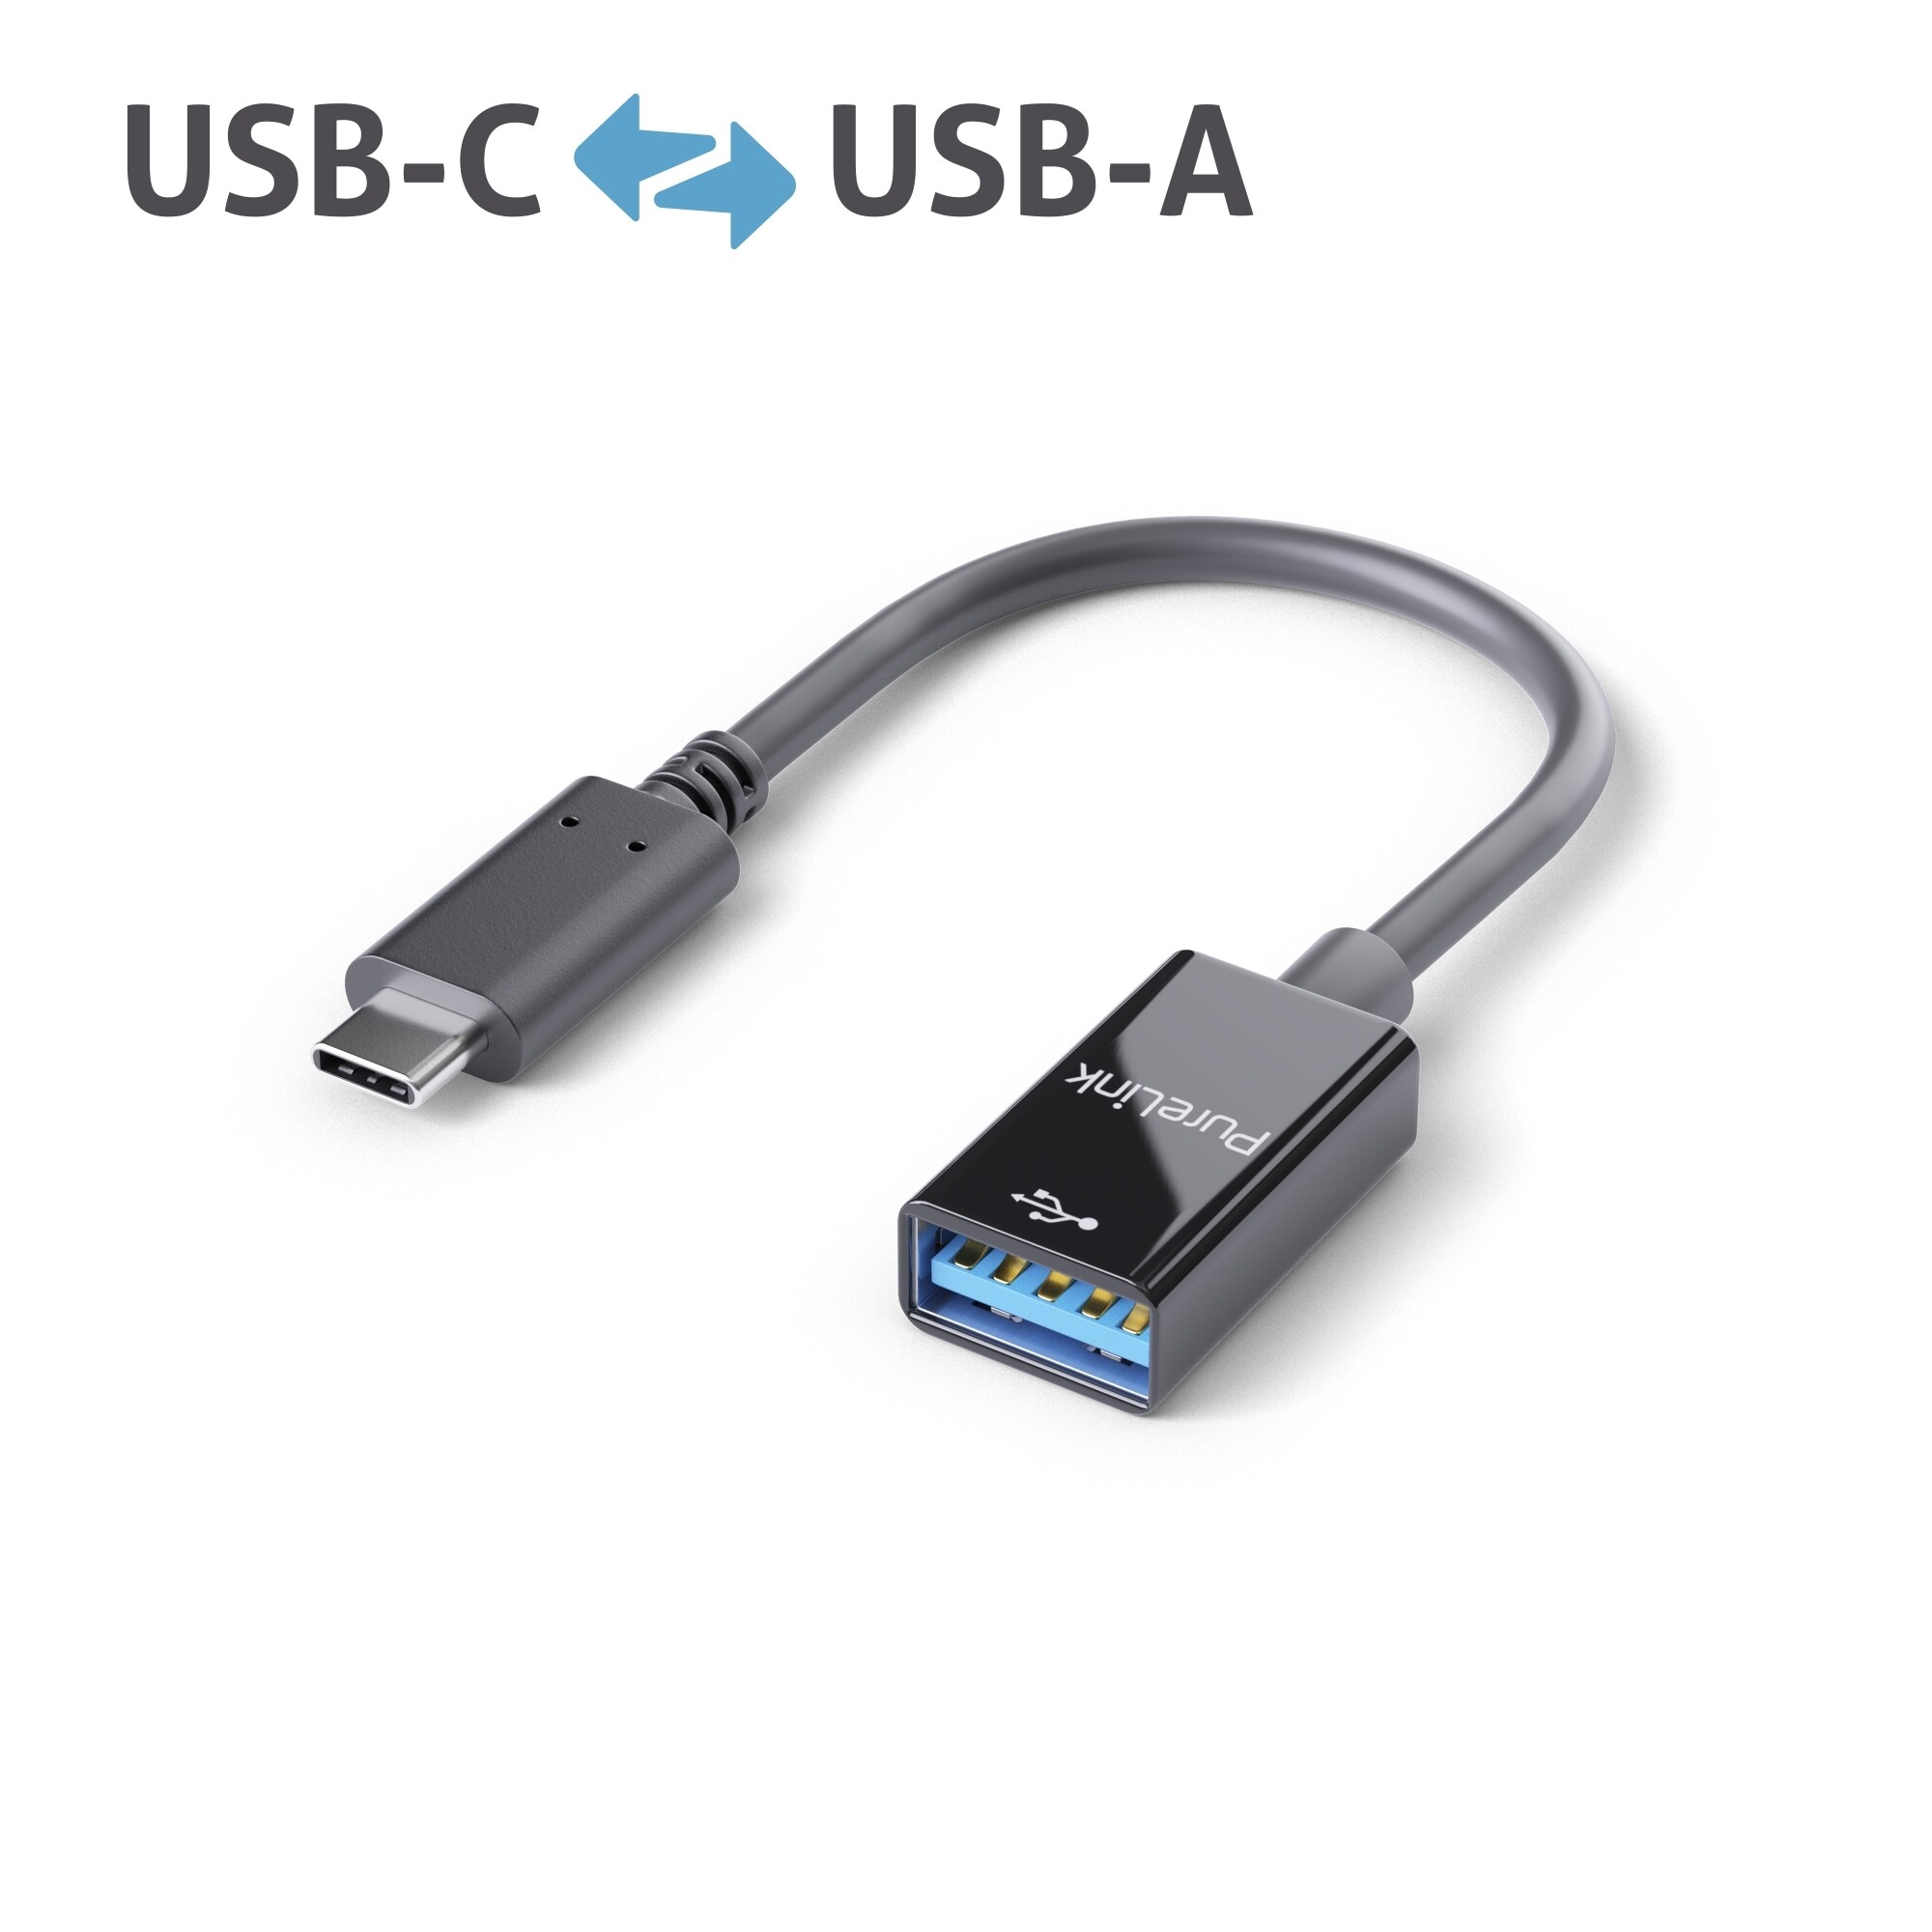 Purelink-IS231-USB-C-auf-USB-A-Adapter-0-10m-schwarz